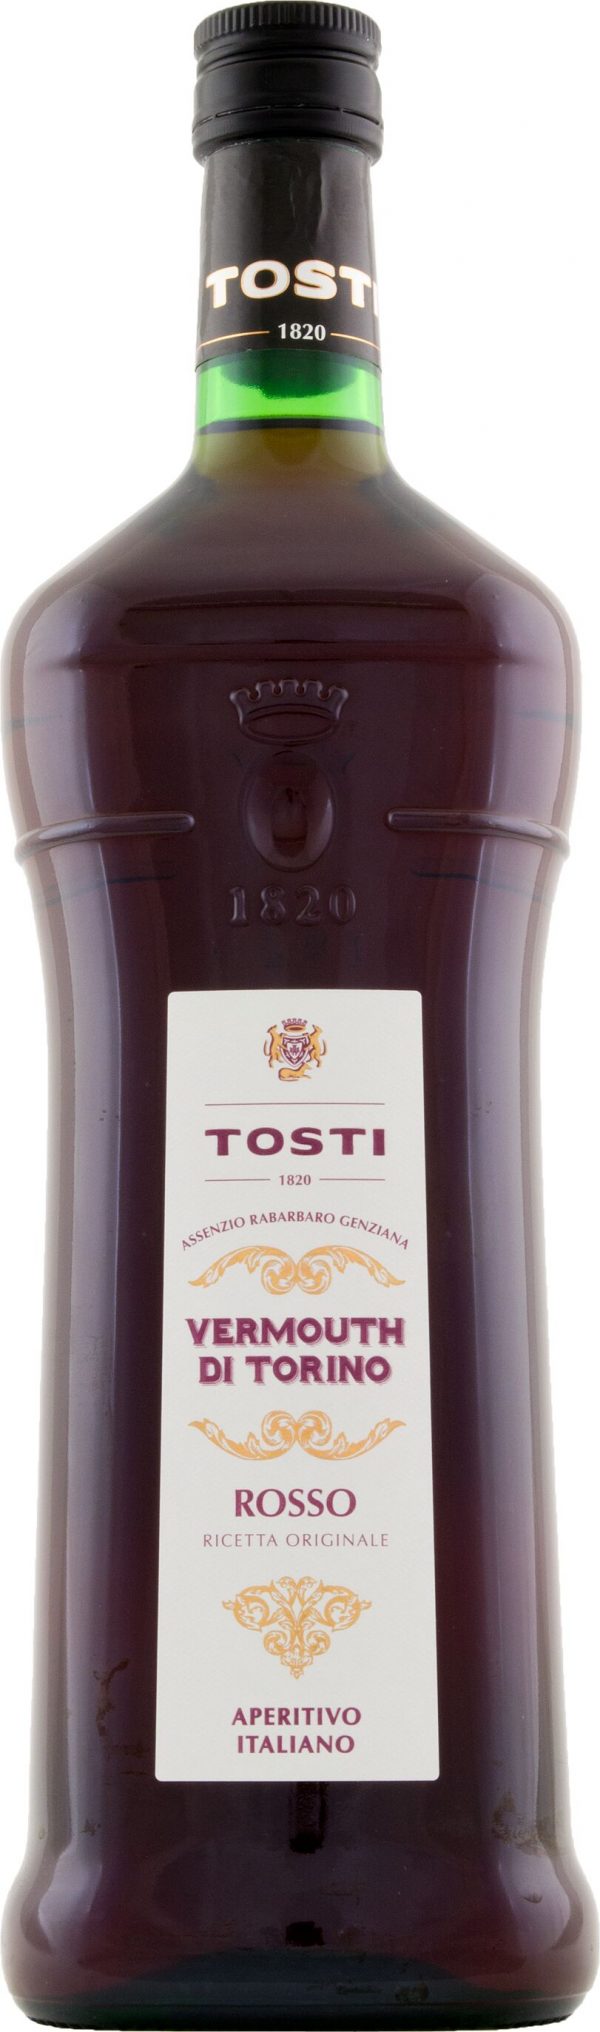 Tosti Vermouth di Torino Rosso